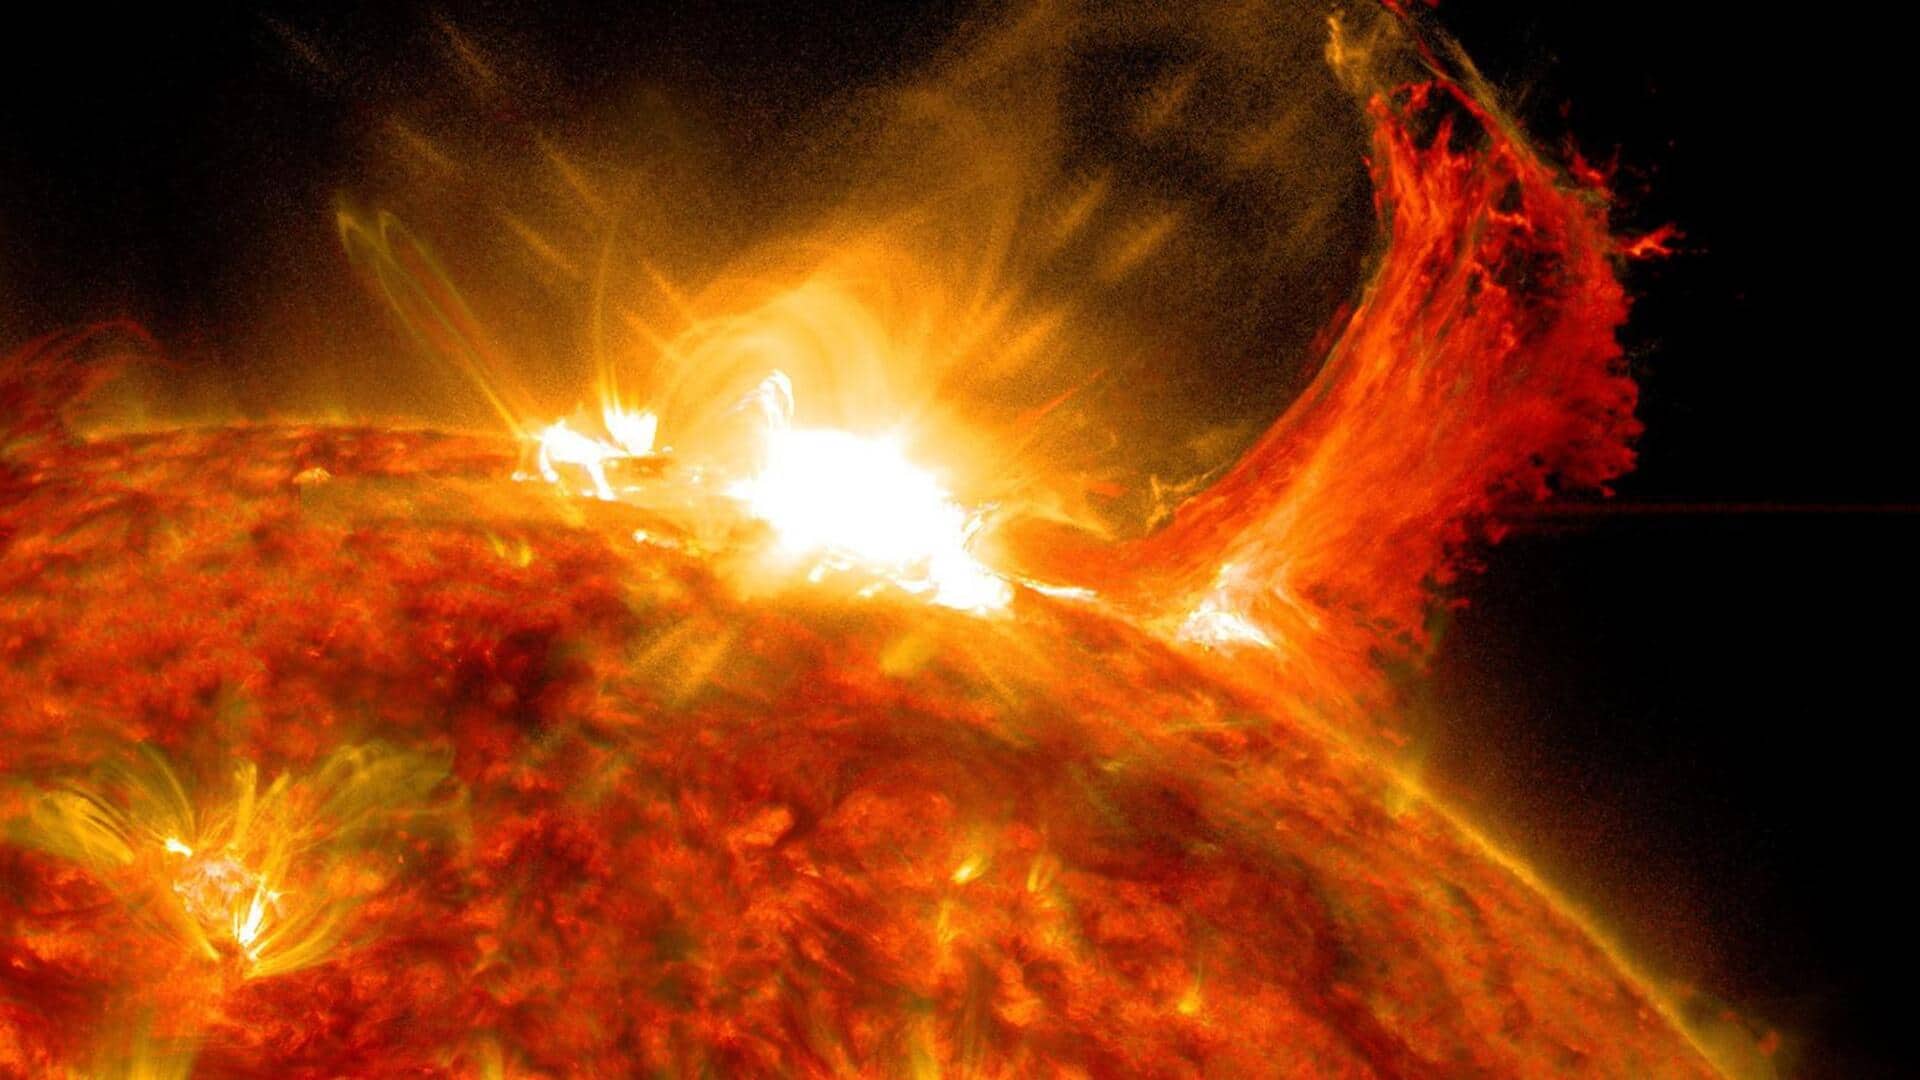 पृथ्वी की तरफ सूर्य पर सक्रिय हैं 7 सनस्पॉट, कभी भी आ सकता है सौर तूफान